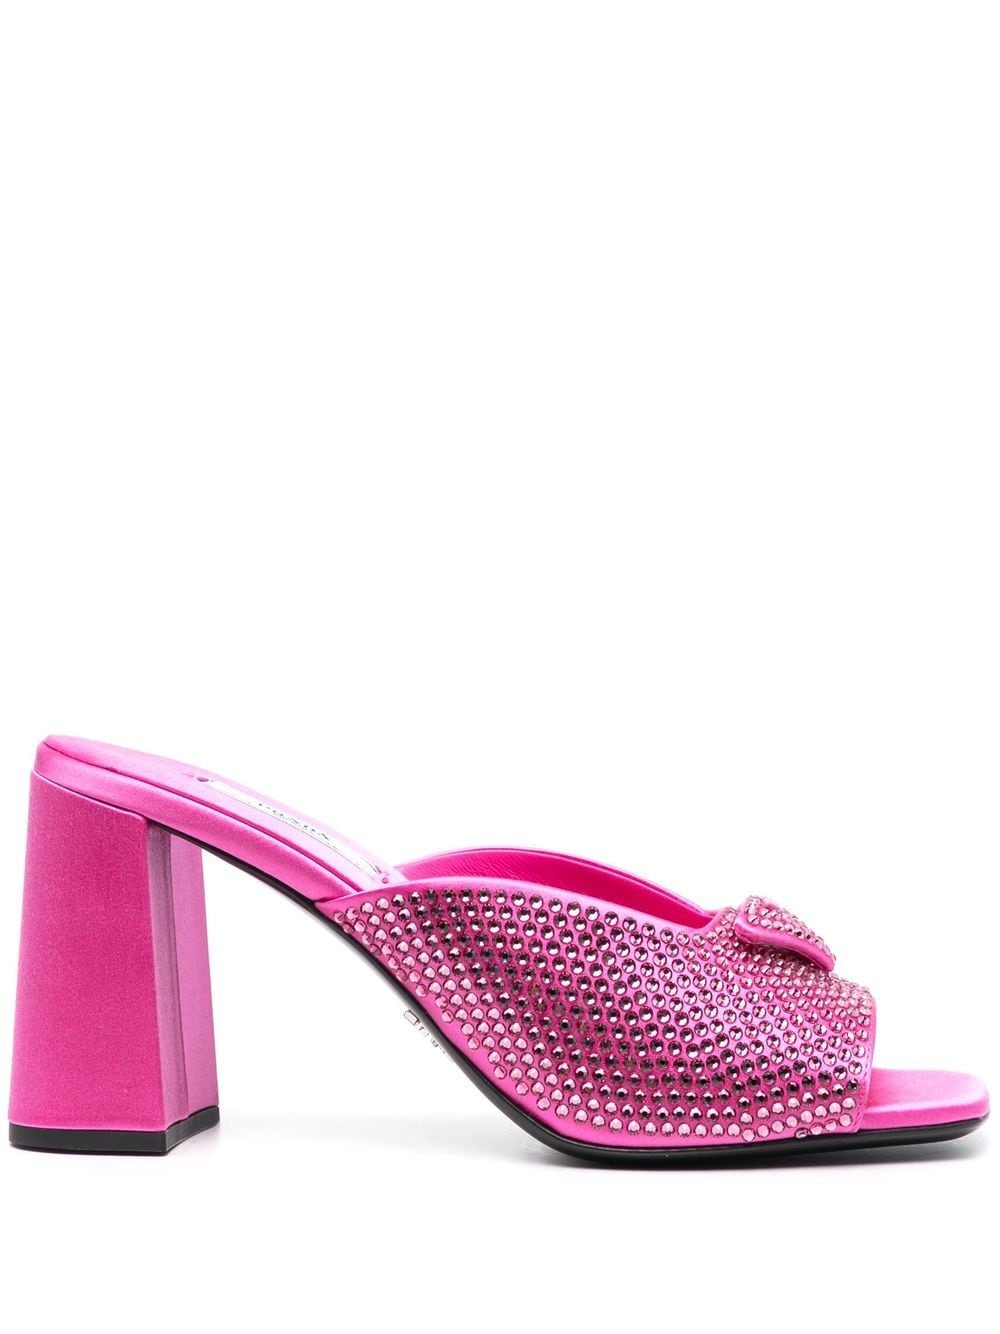 Prada crystal-studded high-heeled satin slides - Pink